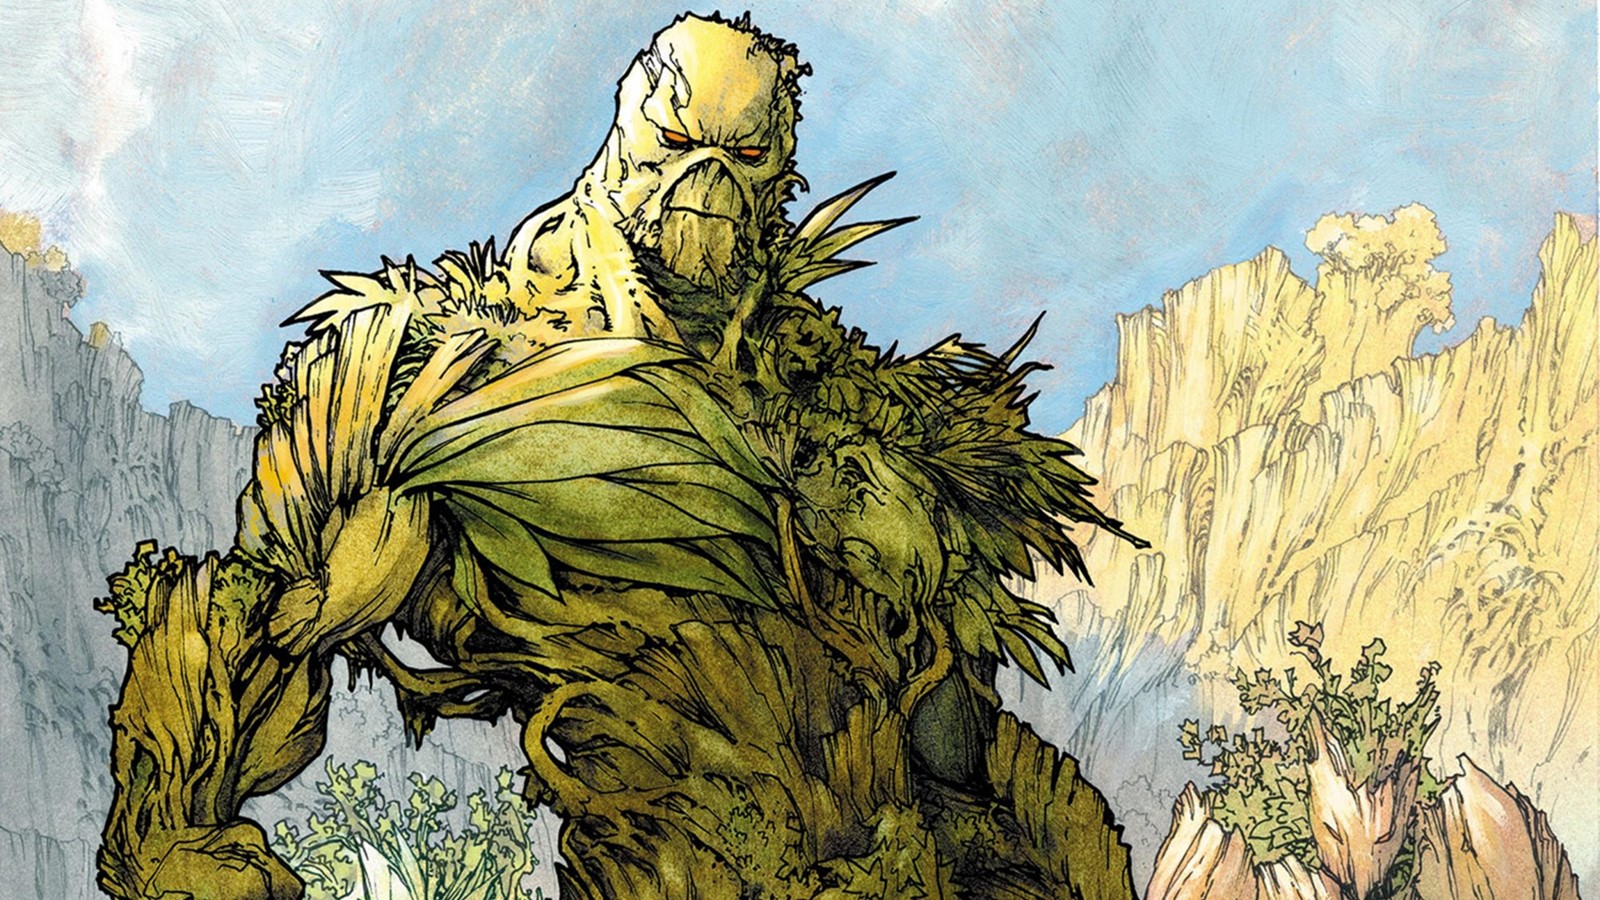 Swamp Thing: James Mangold conferma che è sceneggiatore e regista del film DC